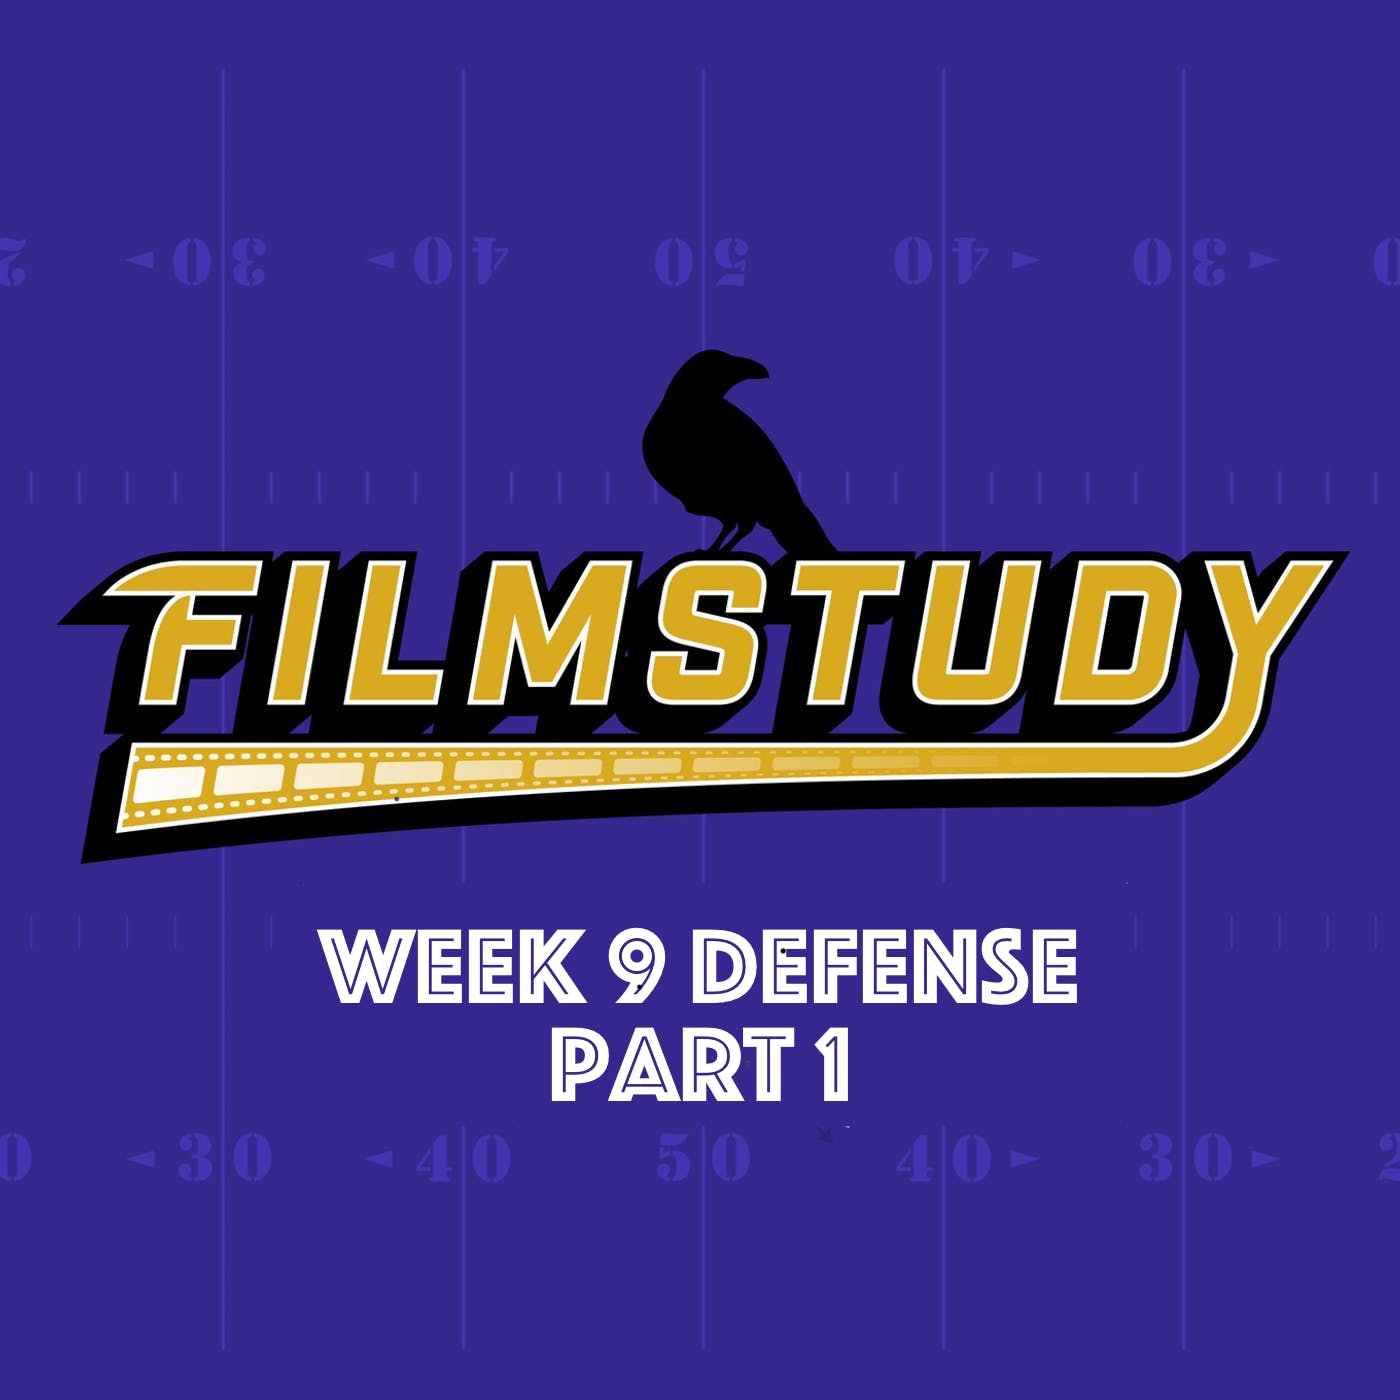 Week 9 Defense Part 1